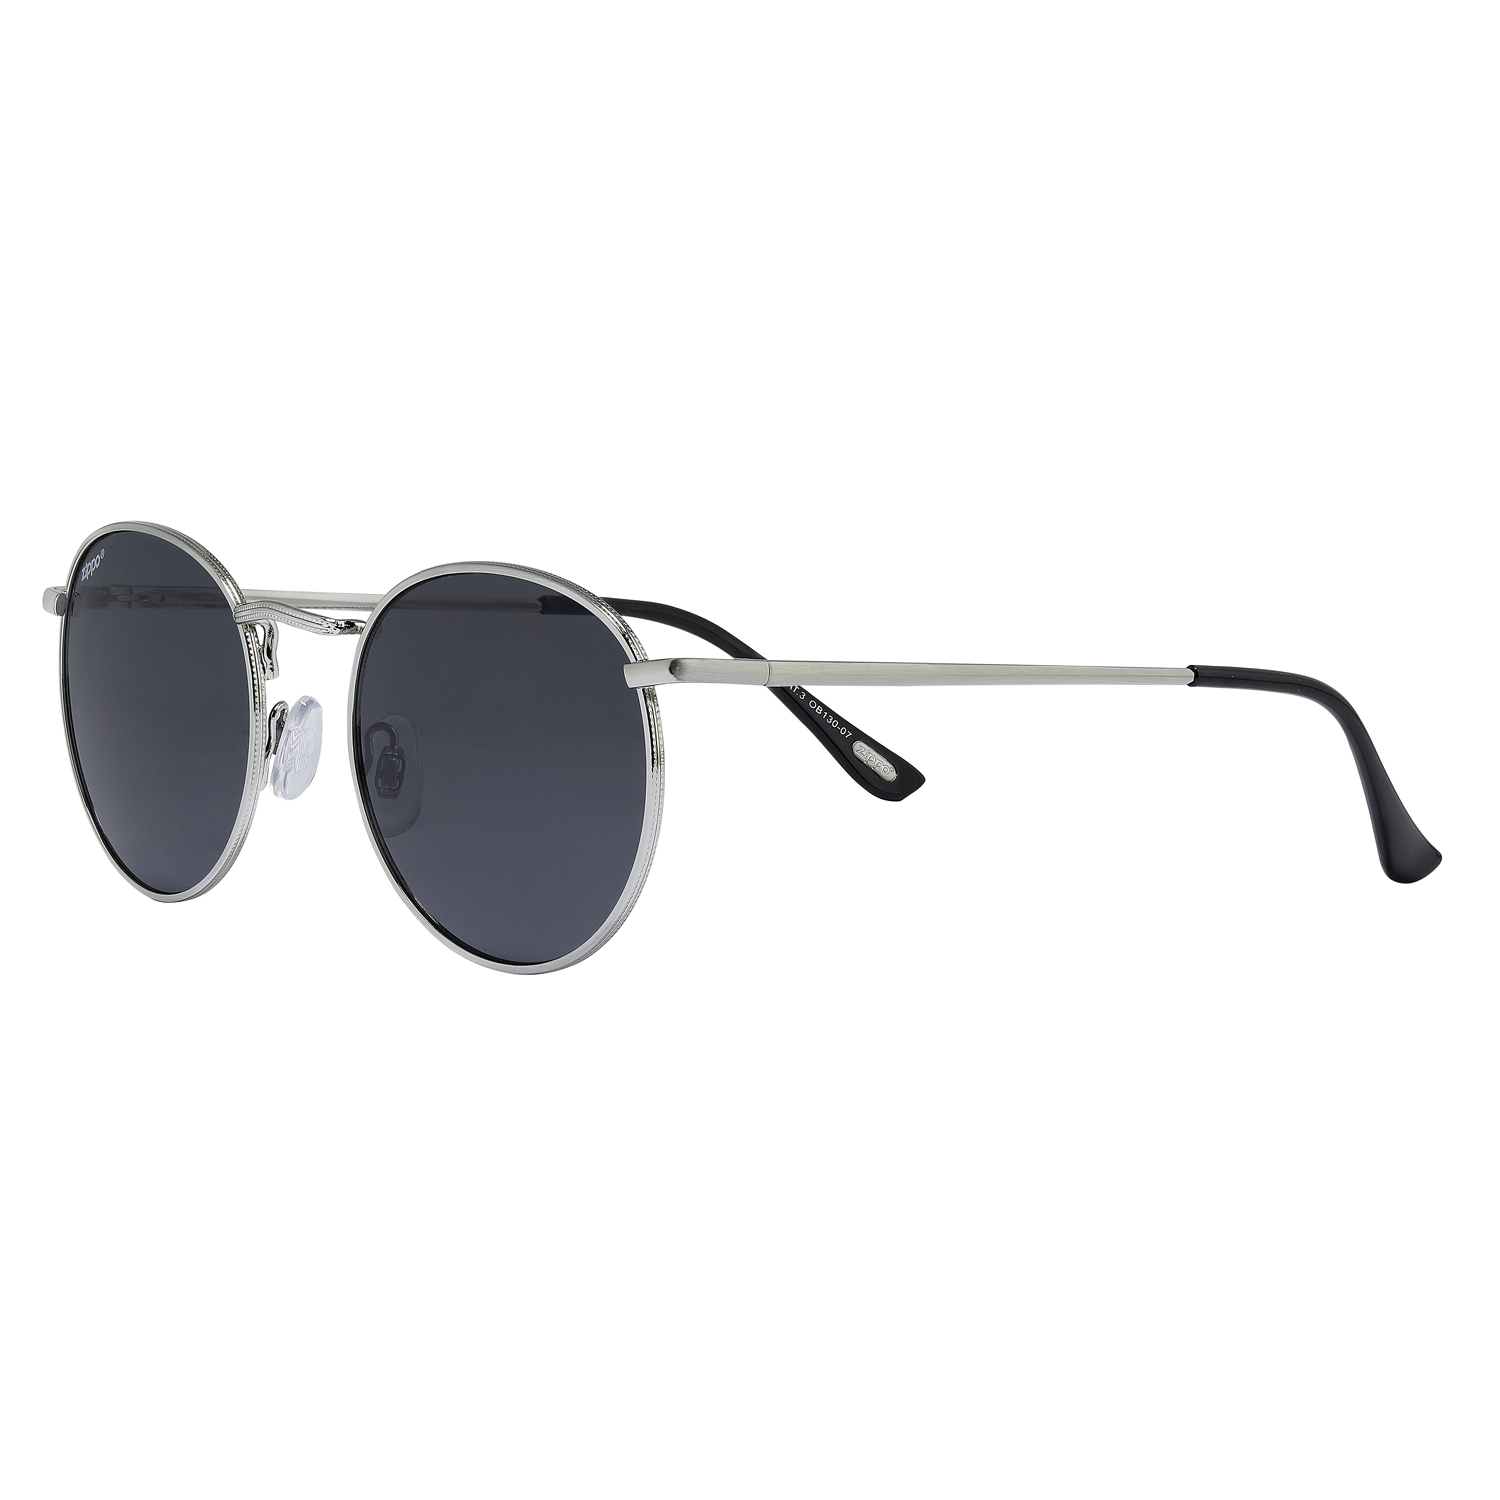 Солнцезащитные очки унисекс Zippo OB130 серебристые/черные